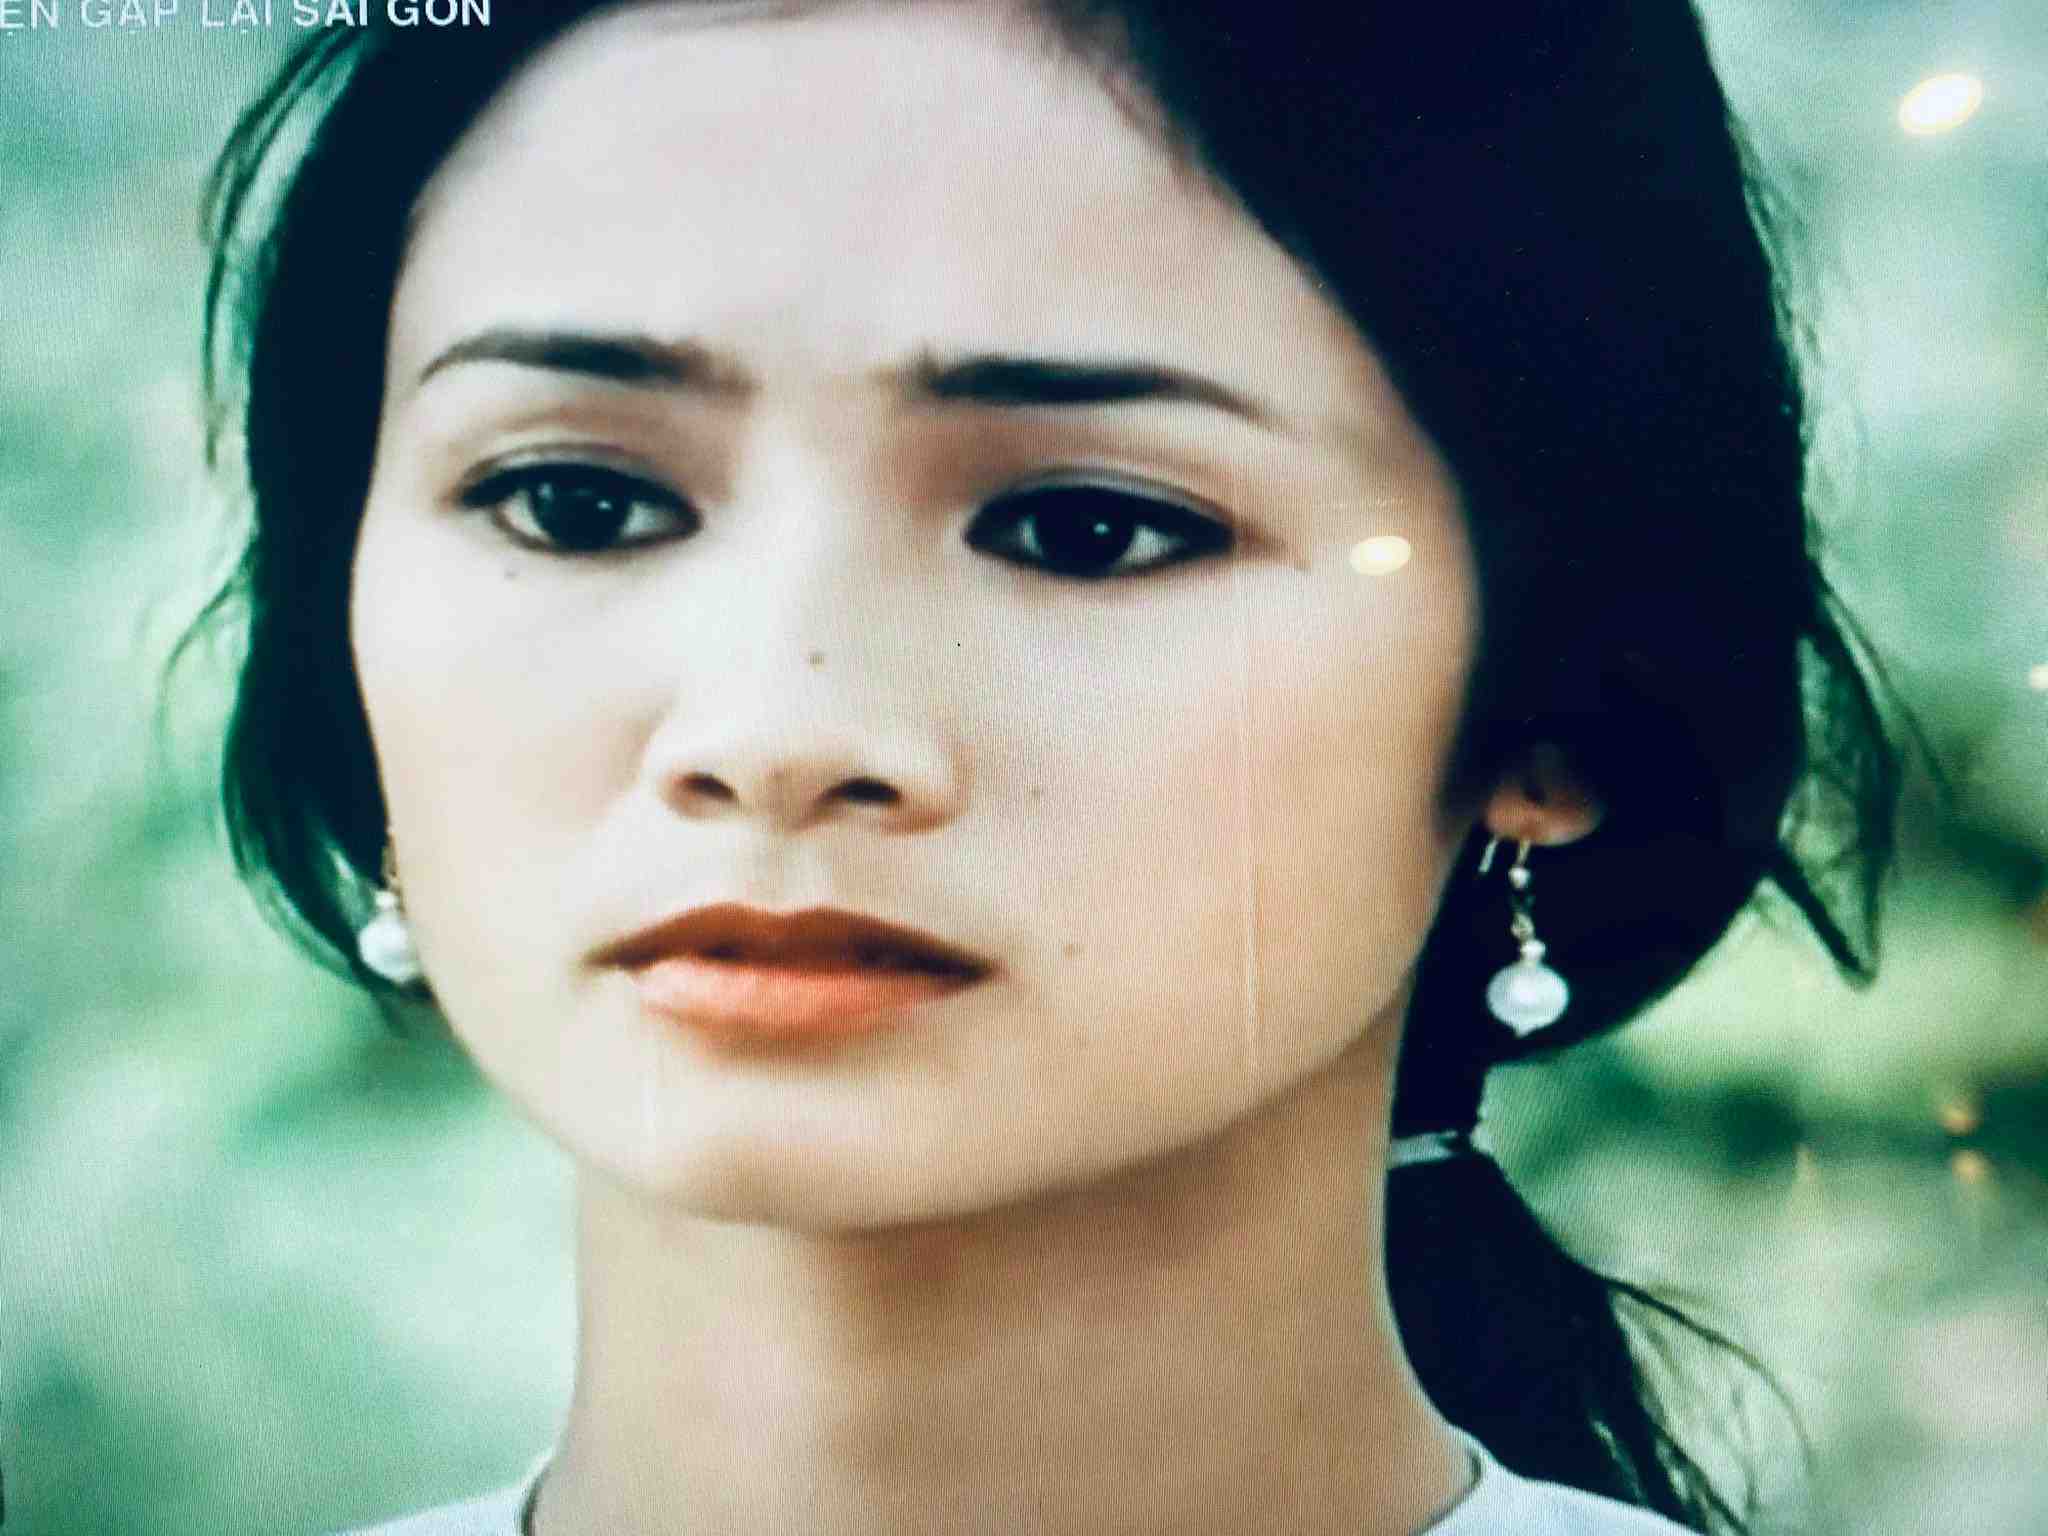 NSND Thu Hà đã vượt qua 200 ứng viên để nhận vai Út Vân trong phim “Hẹn gặp lại Sài Gòn“. Ảnh: Chụp màn hình